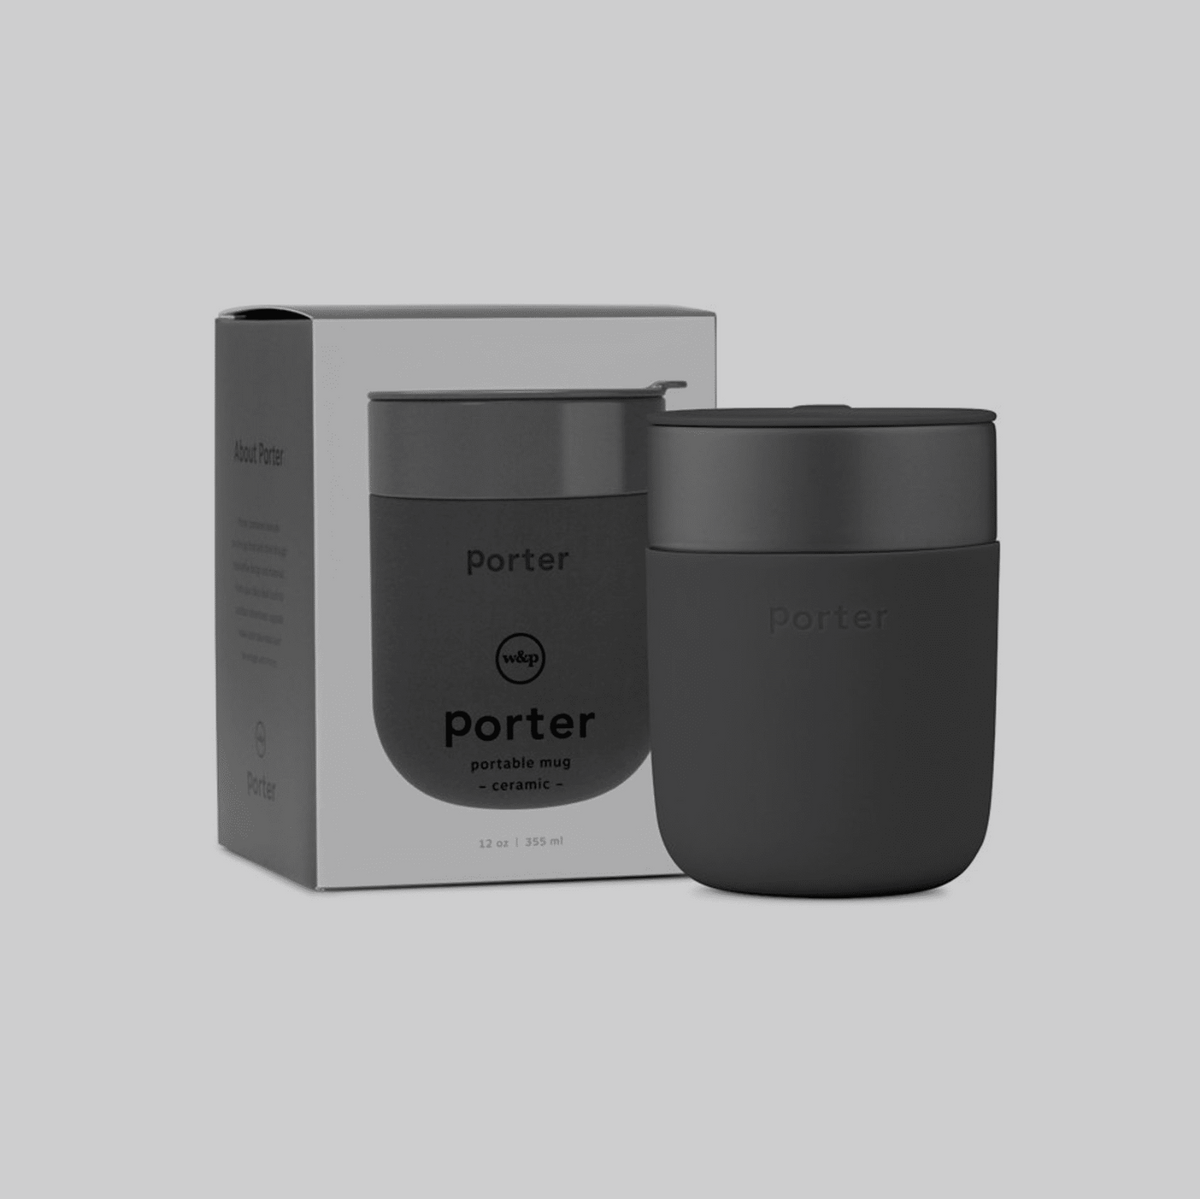 Portable coffee mug with lid 